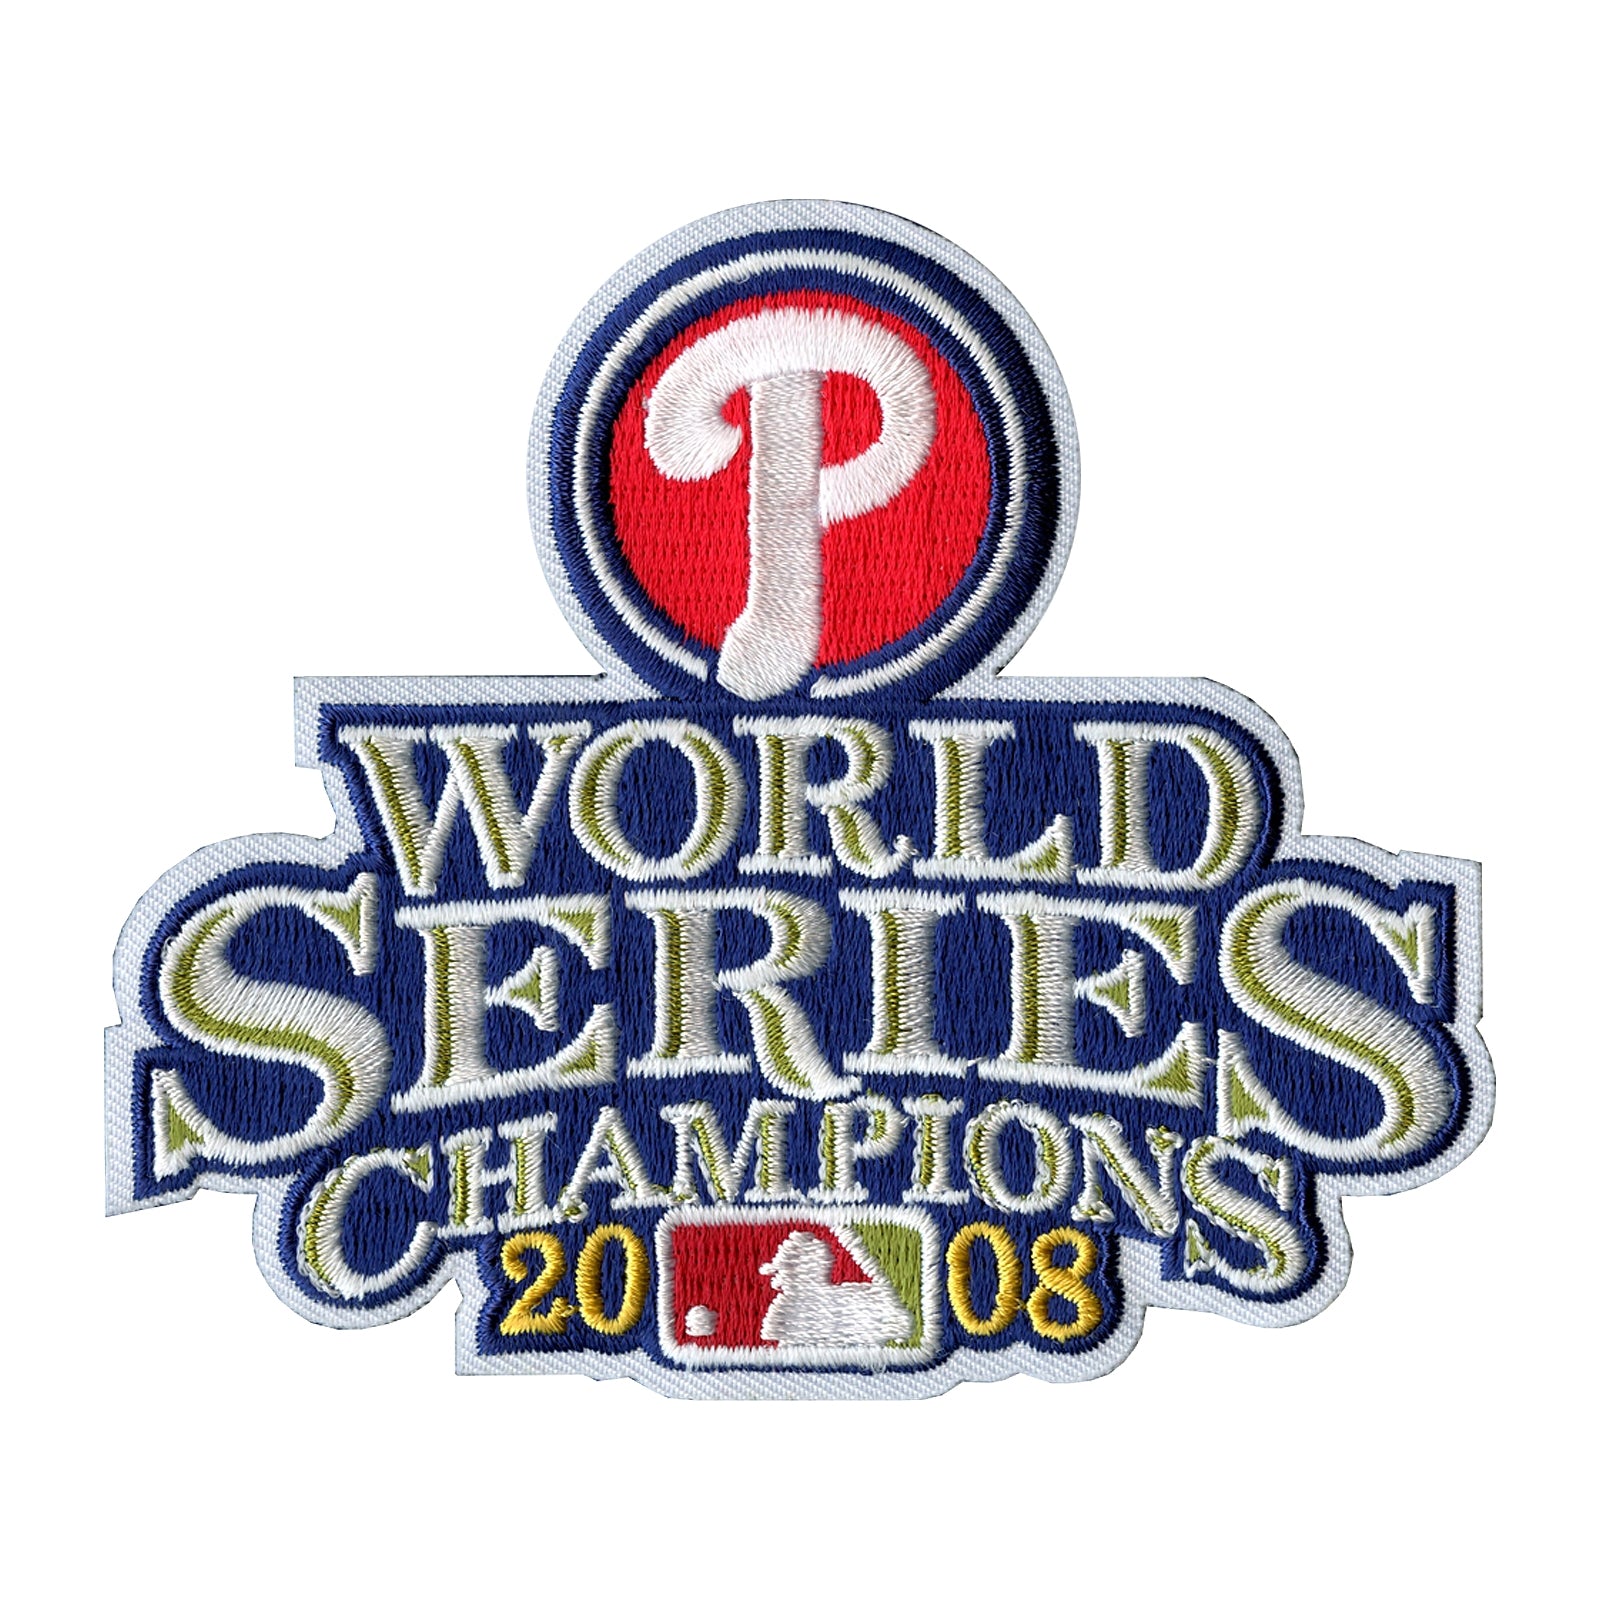 2008 Philadelphia Phillies World Champions Healy Plaque